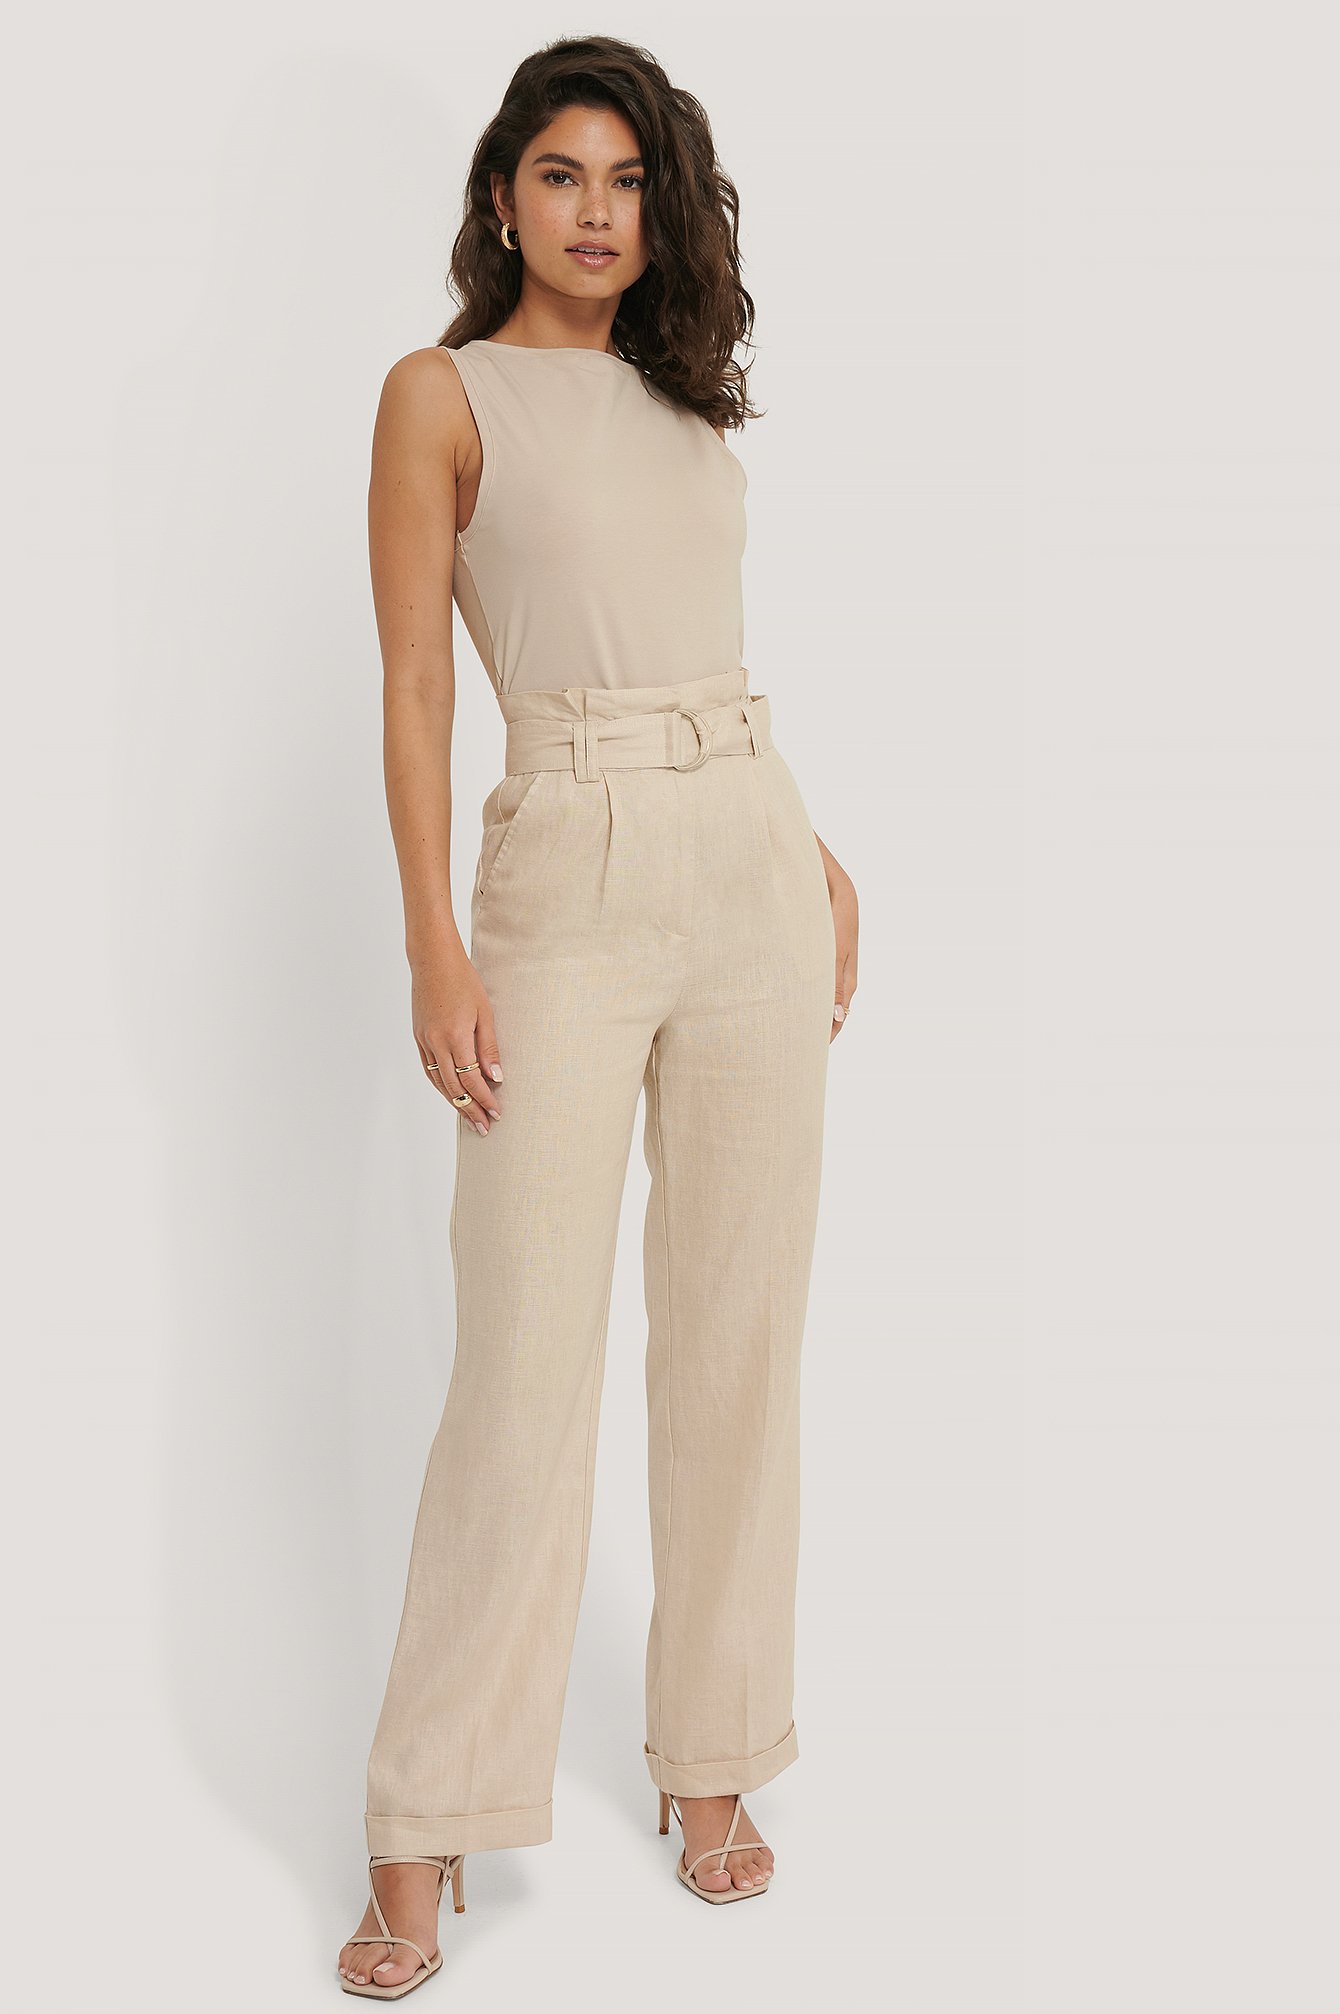 Linen Paperwaist Belt Pants Outfit